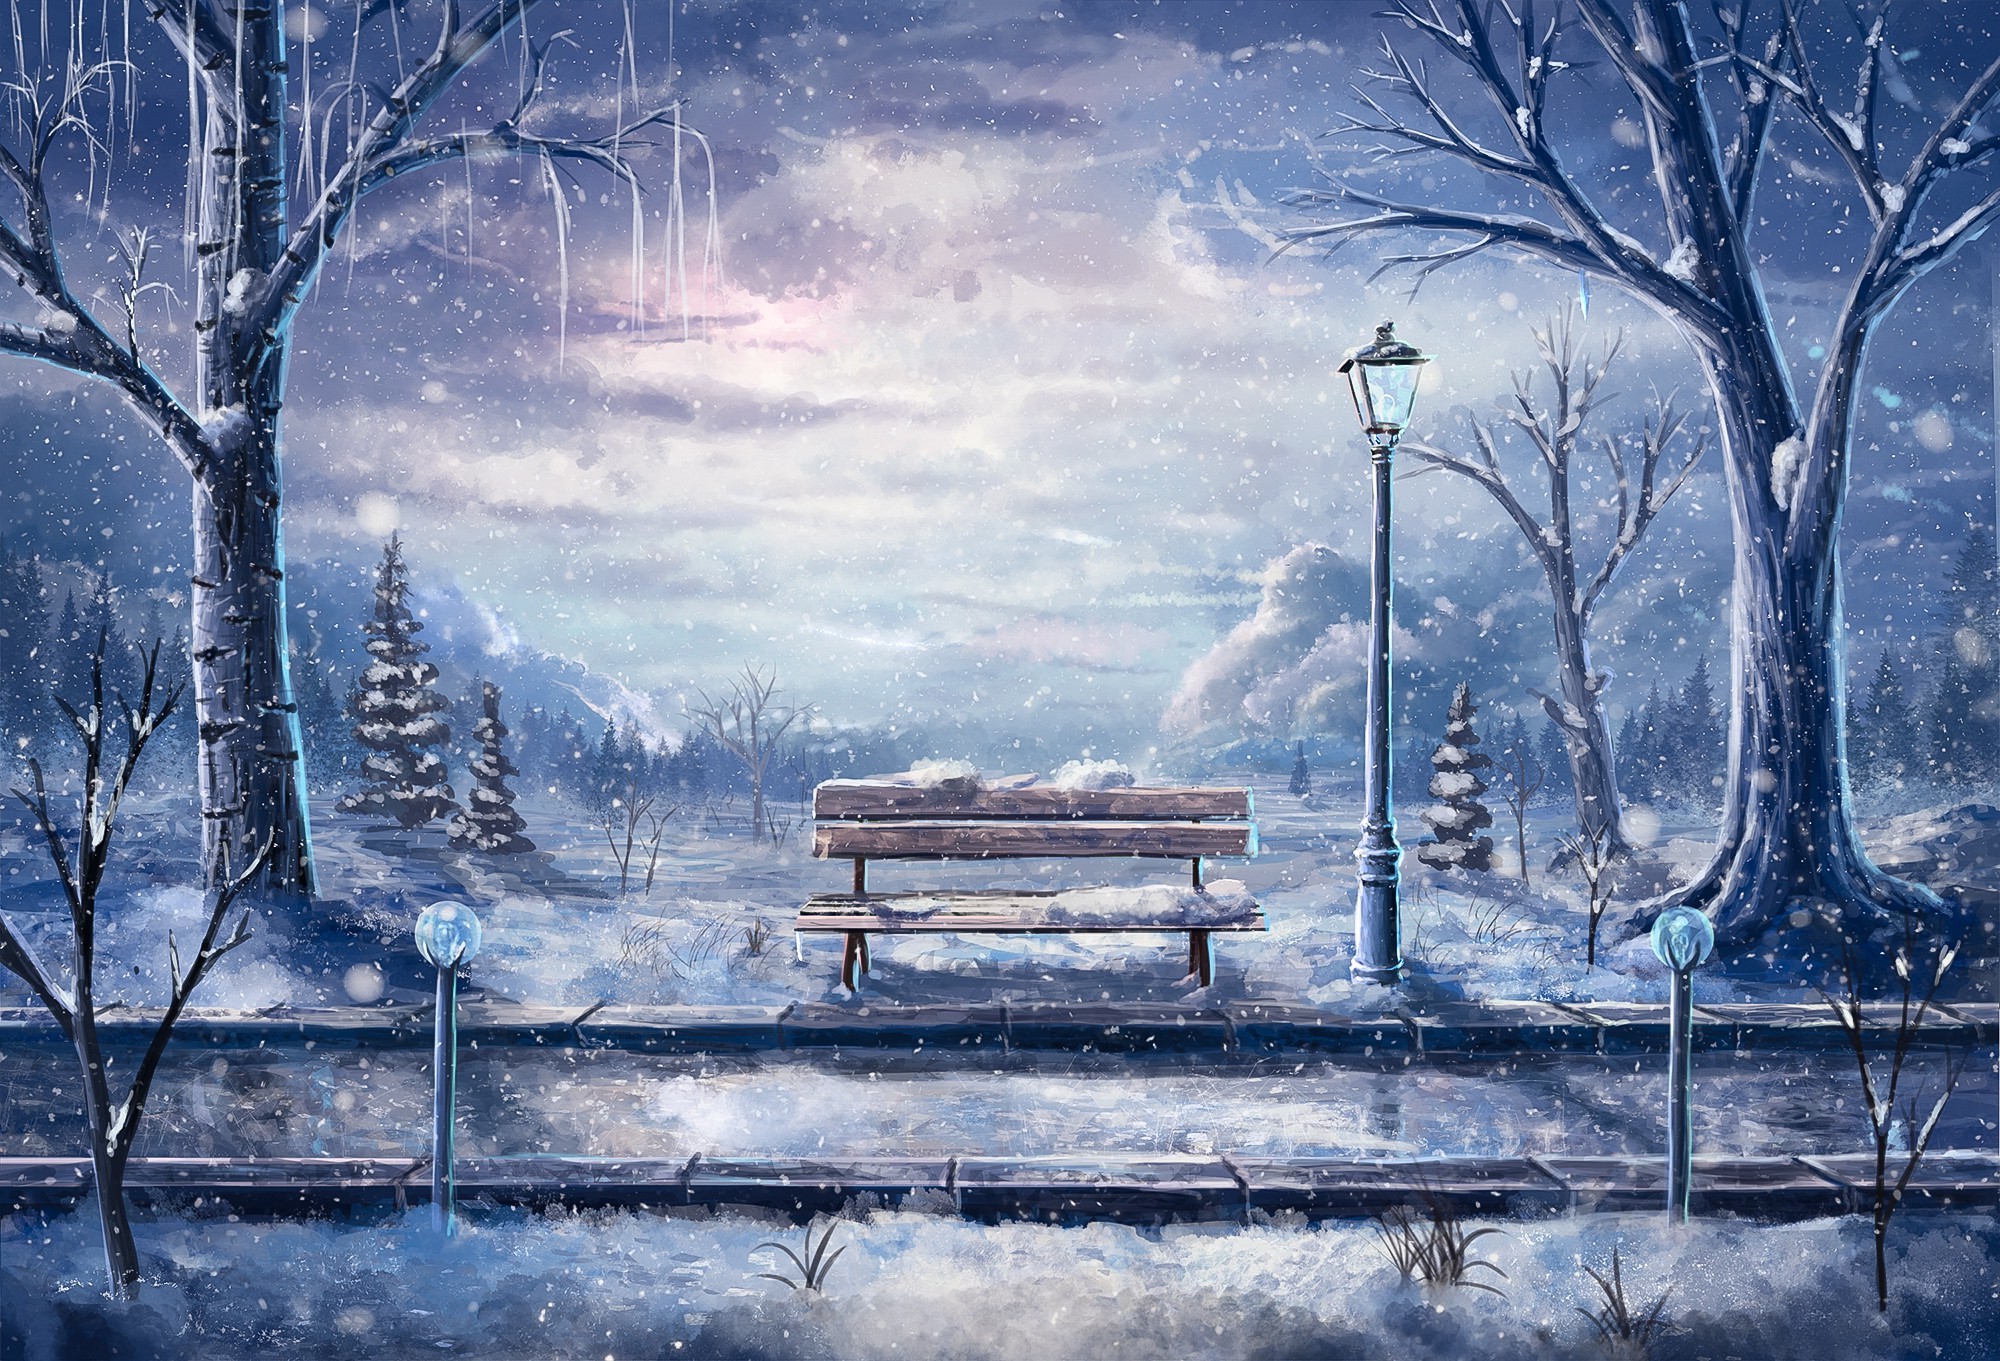 artwork, Bench, Winter, Snow, Street light, Road, Sylar Wallpaper